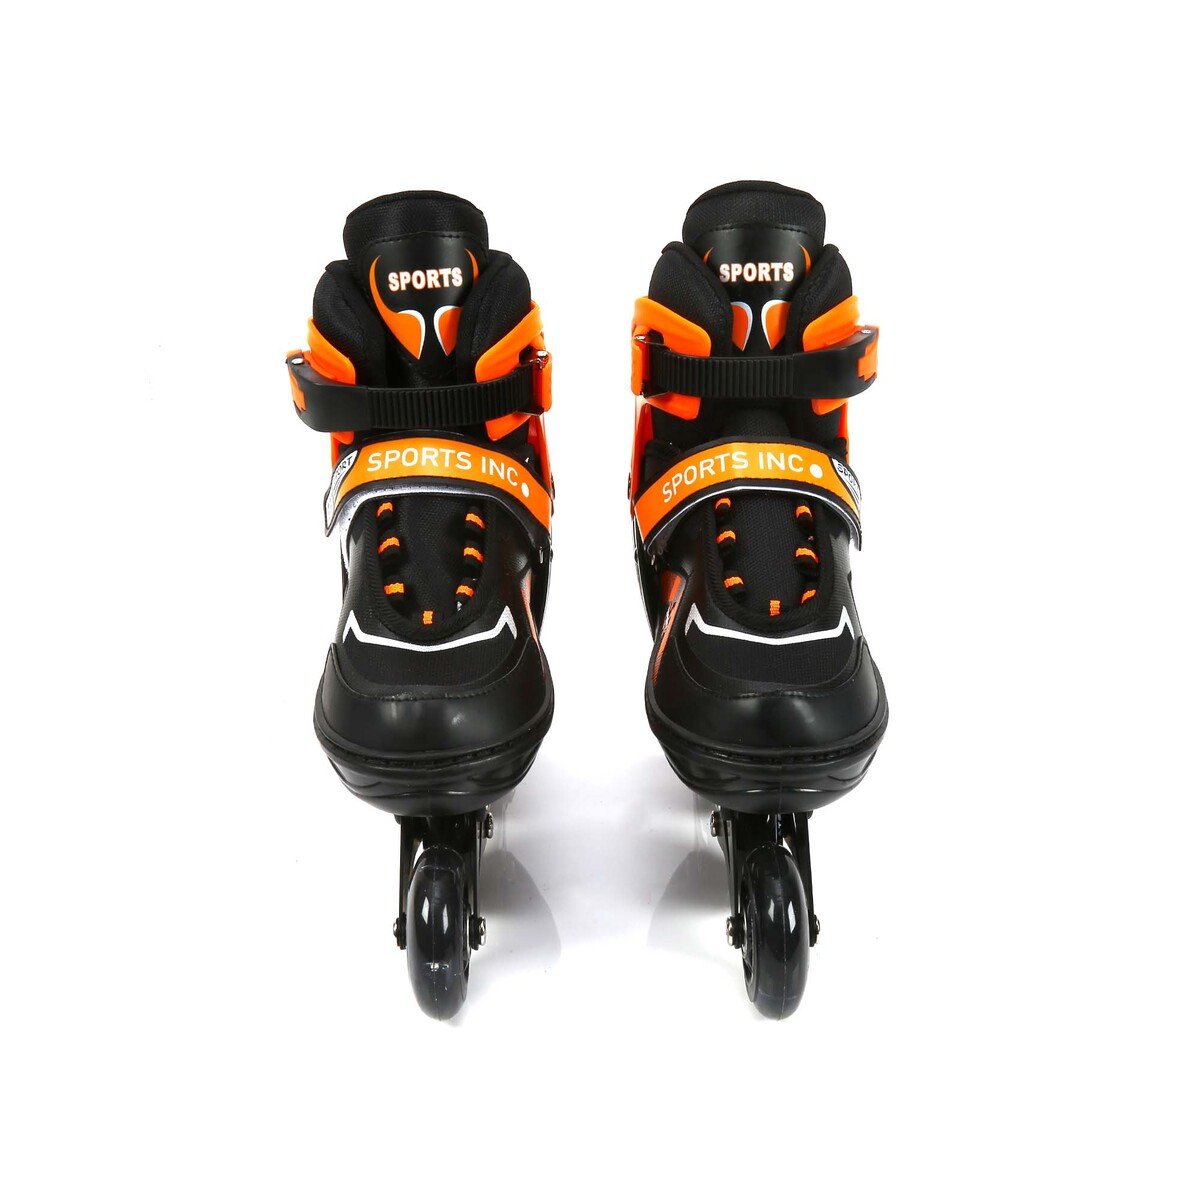 سبورتس إنك حذاء تزلج للأطفال بأربع عجلات مقاس 39-43 AB6-333 لارج ألوان متنوعة